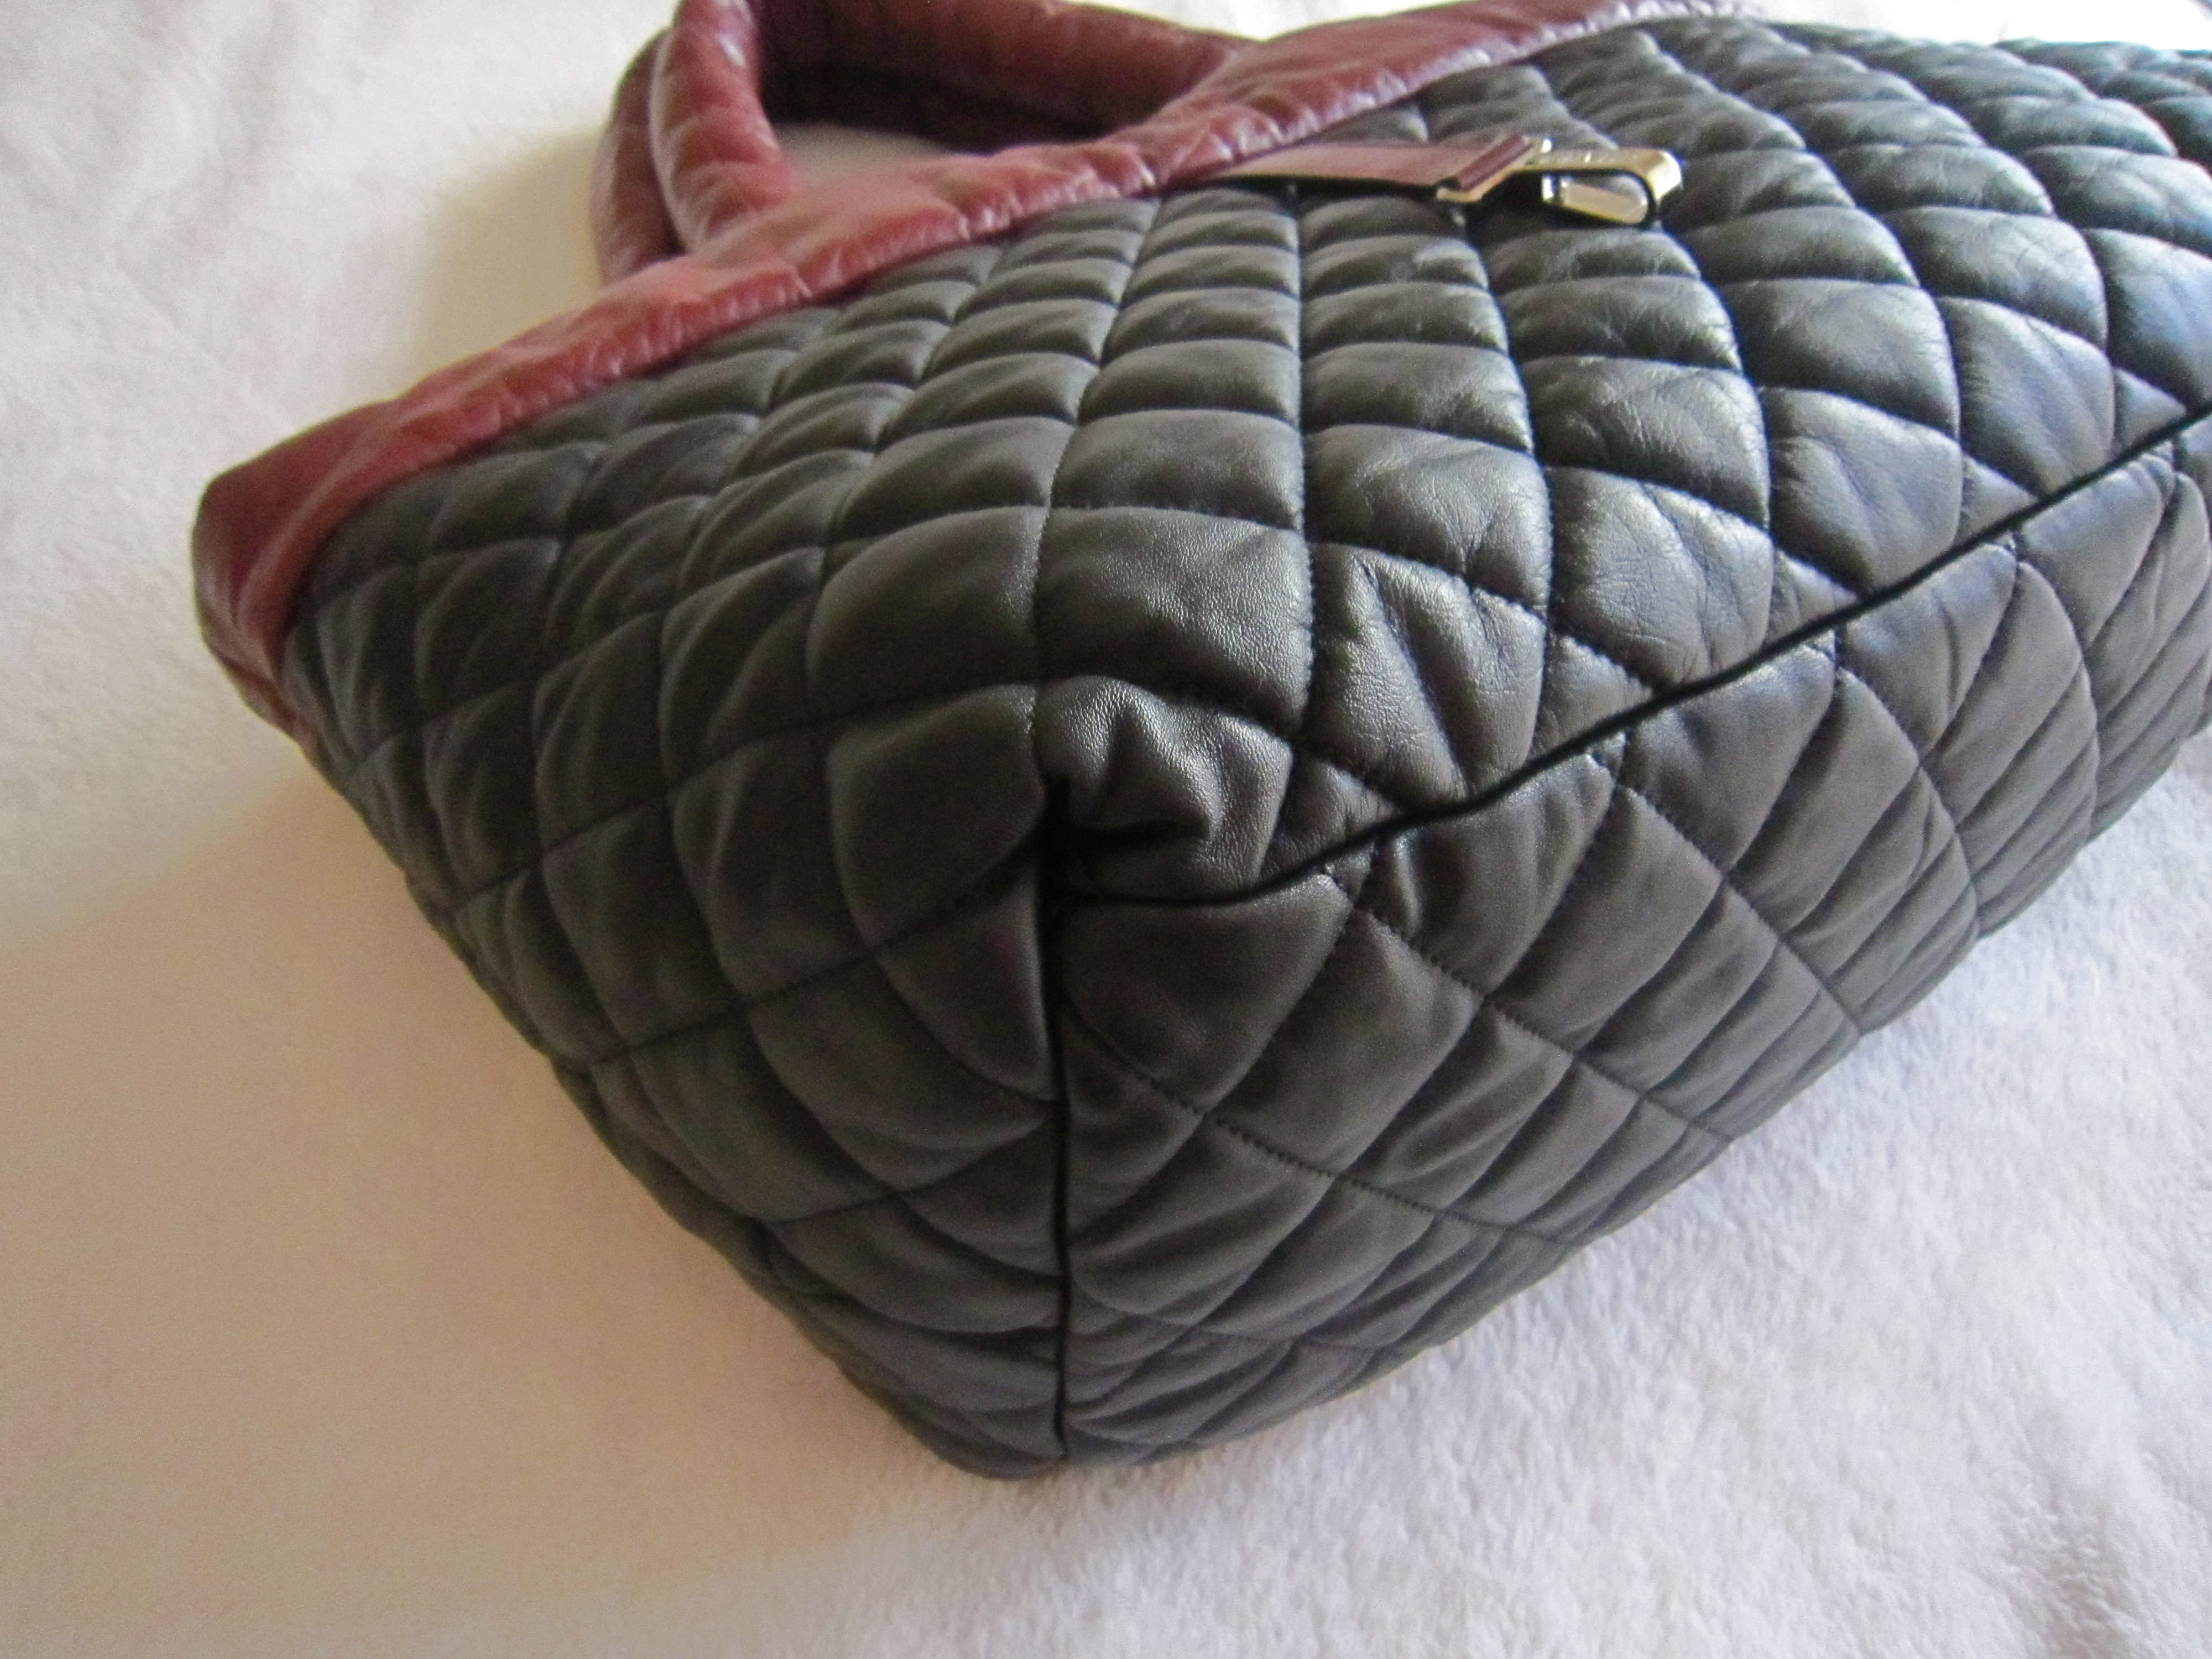 CHANEL à larrière, Gray Chanel Cocoon Handbag Bag